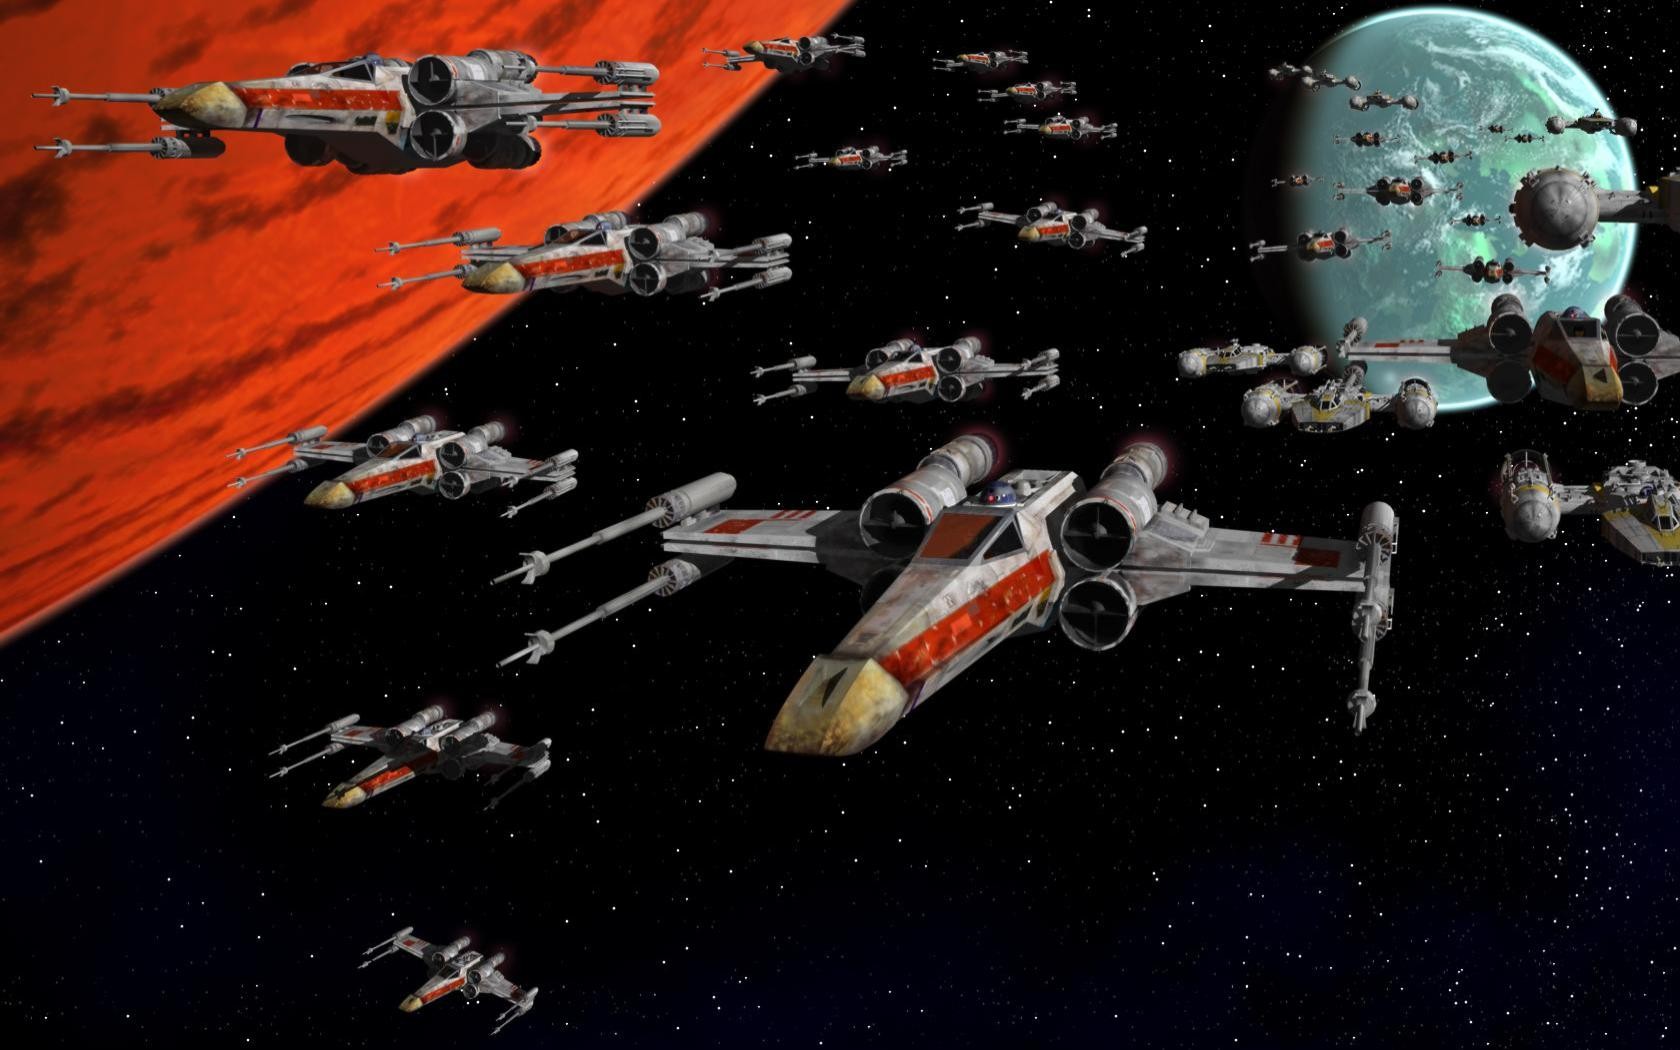 Star Wars Rebel Alliance Star Wars Ships Science Fiction Wallpaper:1680x1050